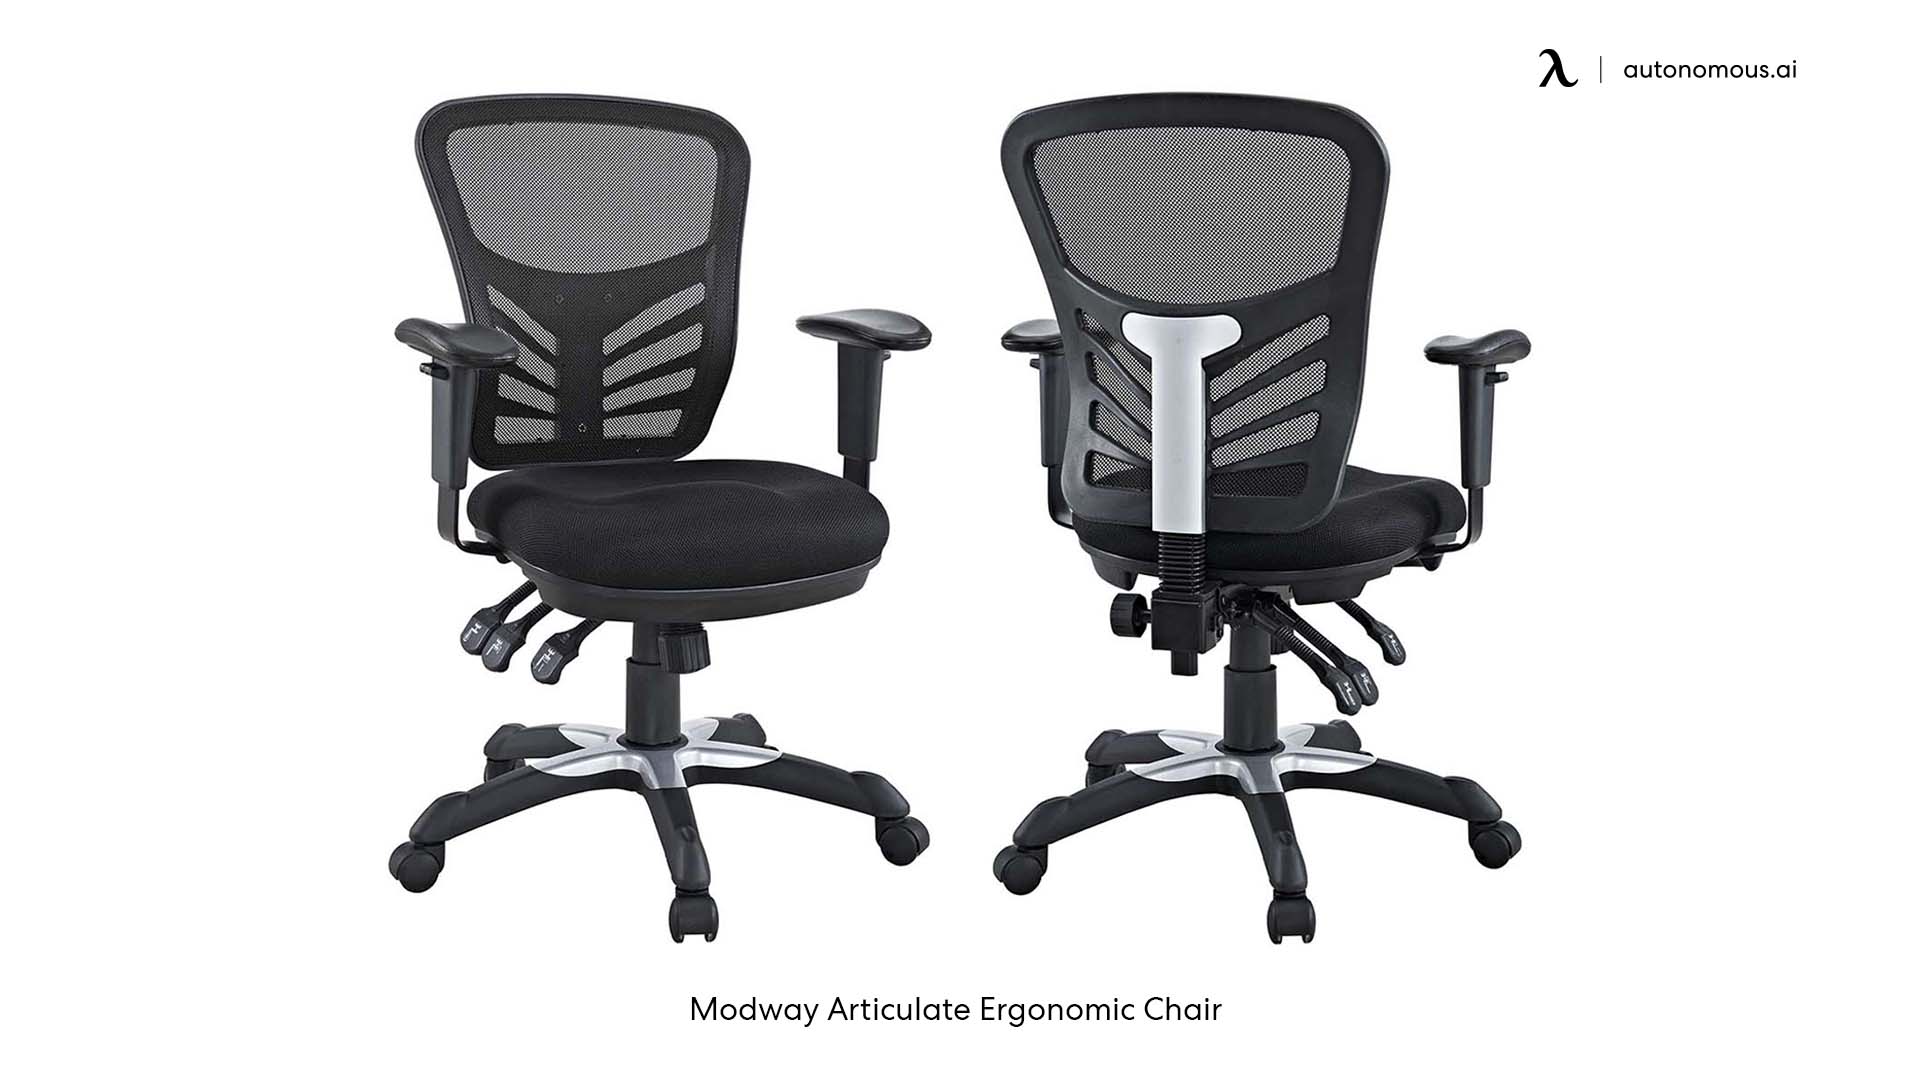 Modway Articulate Ergonomic Office Chair best desk chair